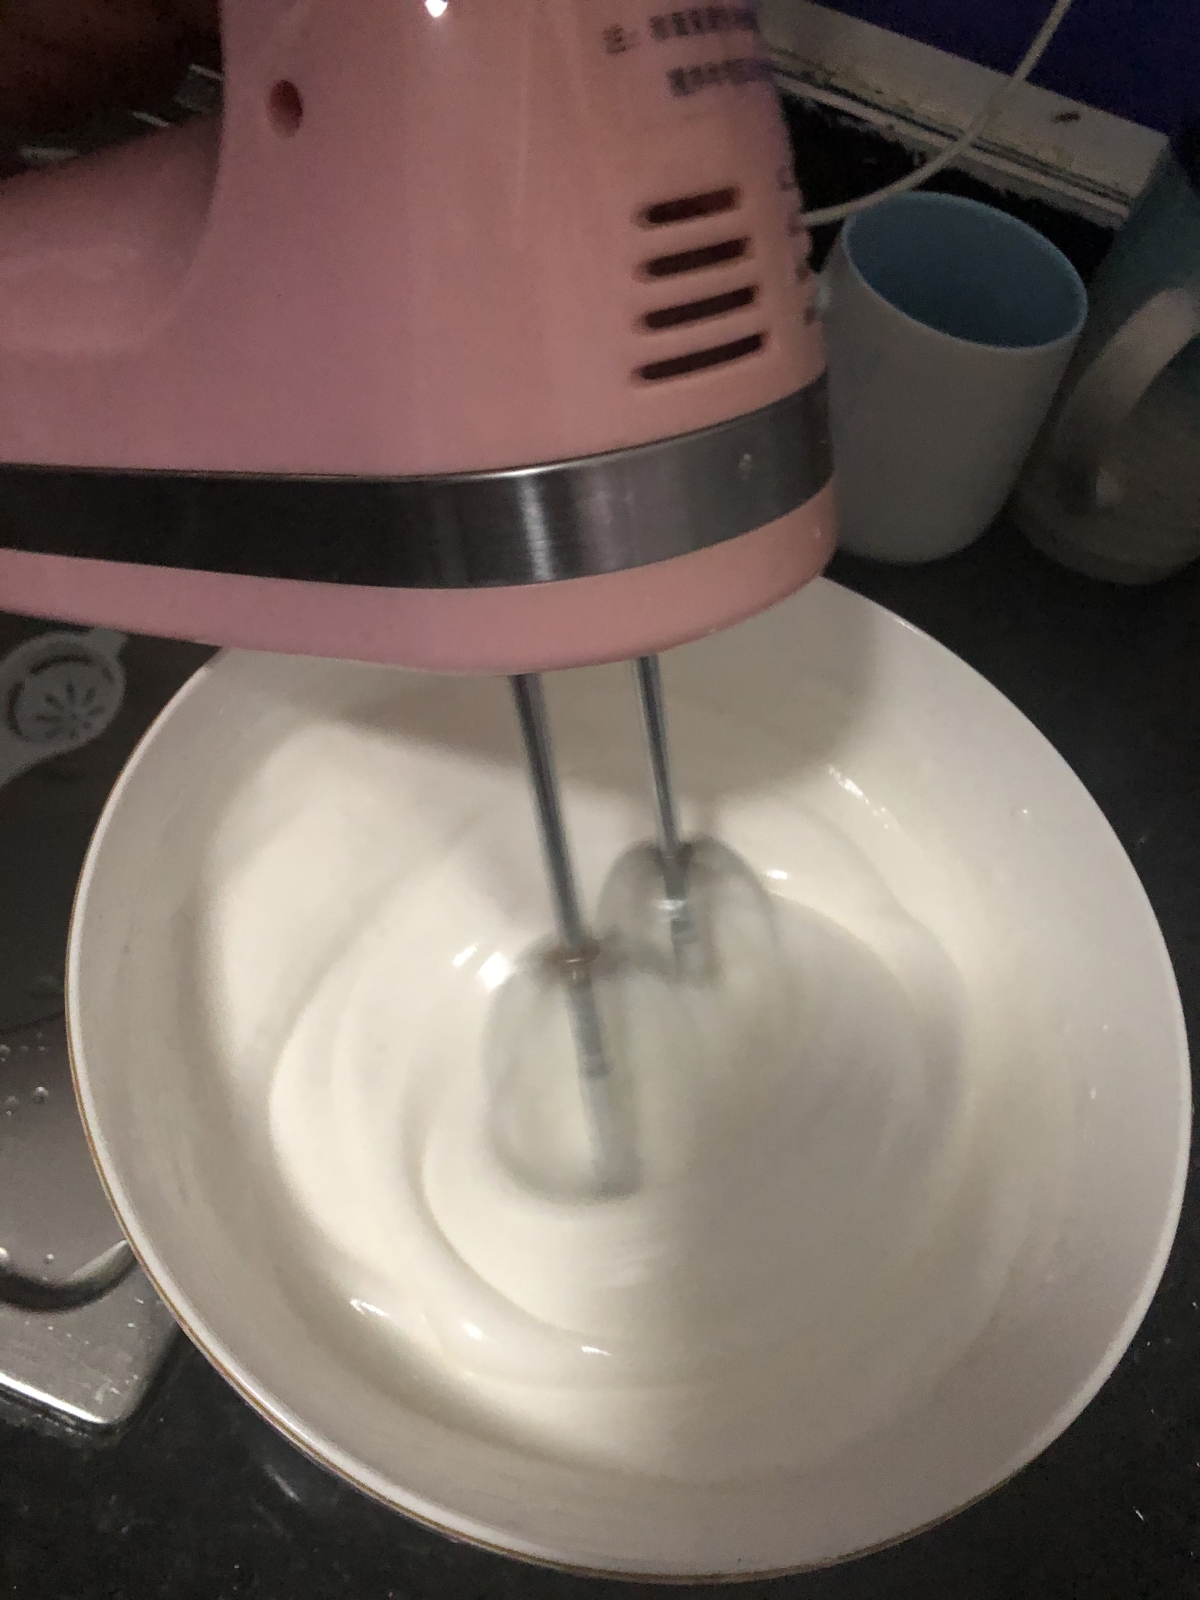 Whipping cream for an egg cake.